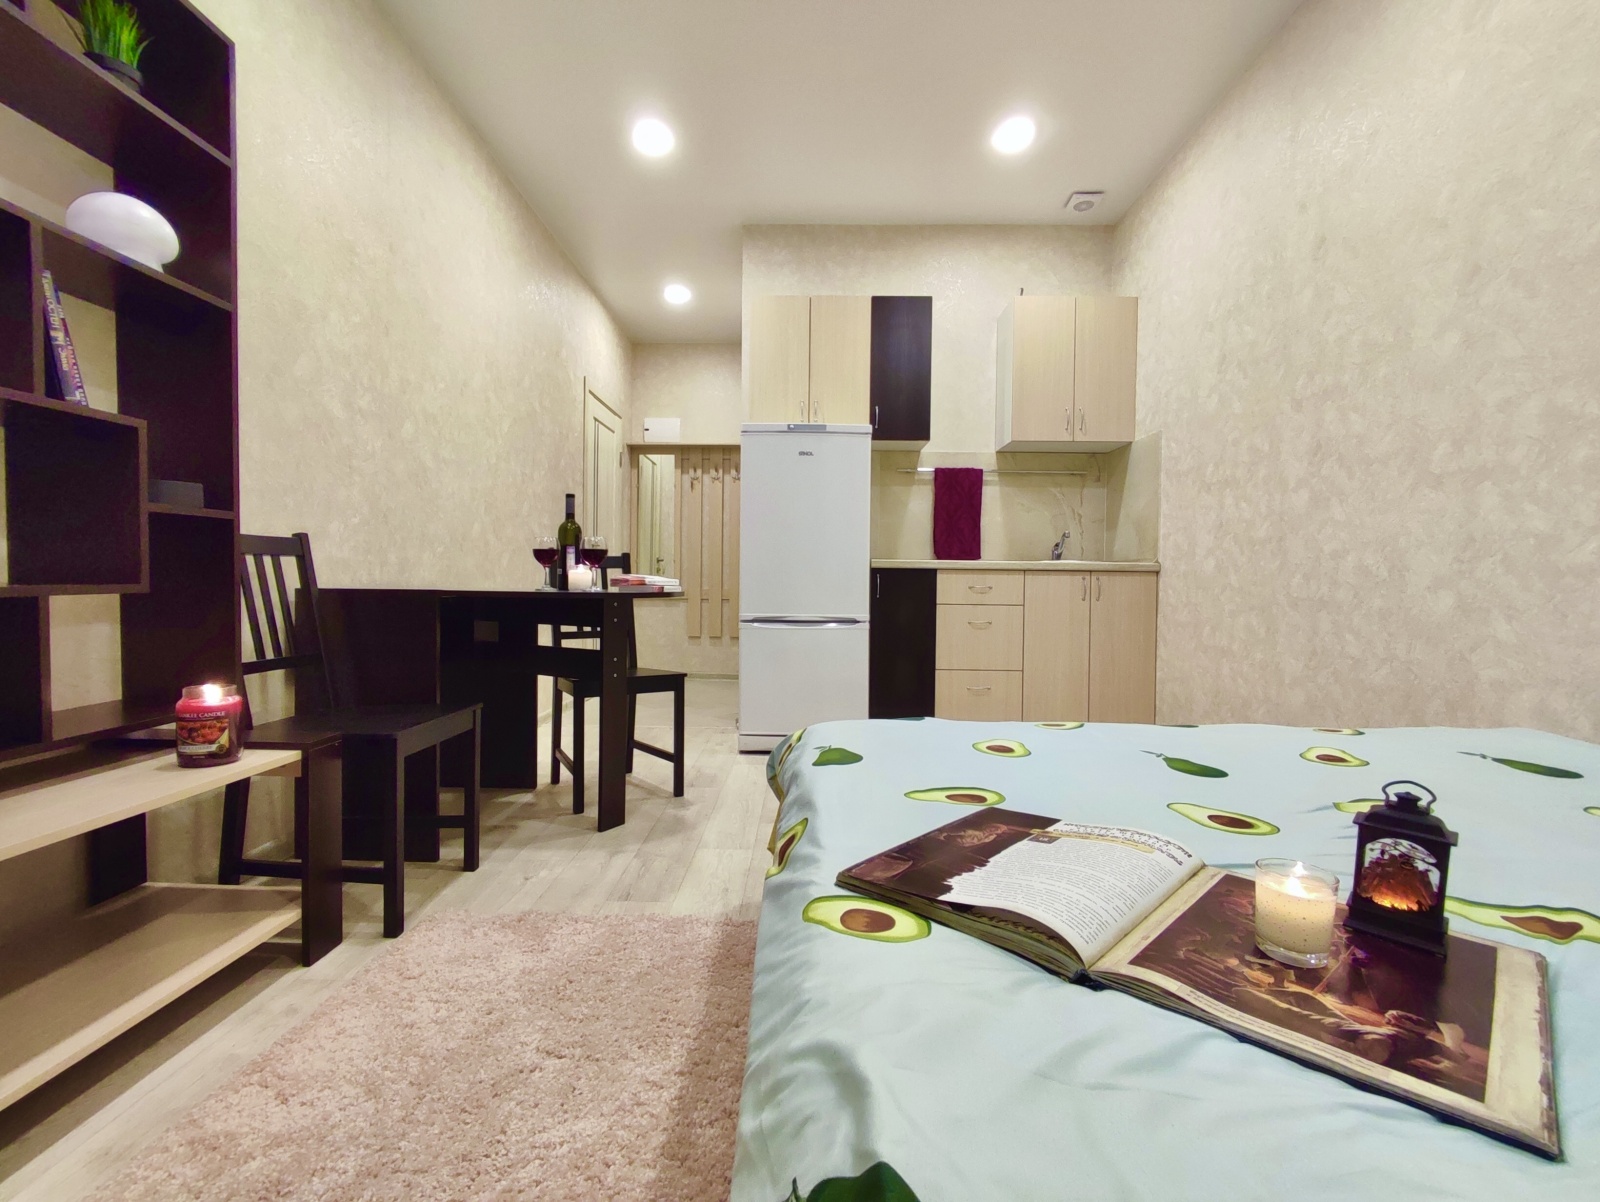 Тёплая уютная квартира бизнес класса со свежим ремонтом расположена в ЖК "Городские истории"